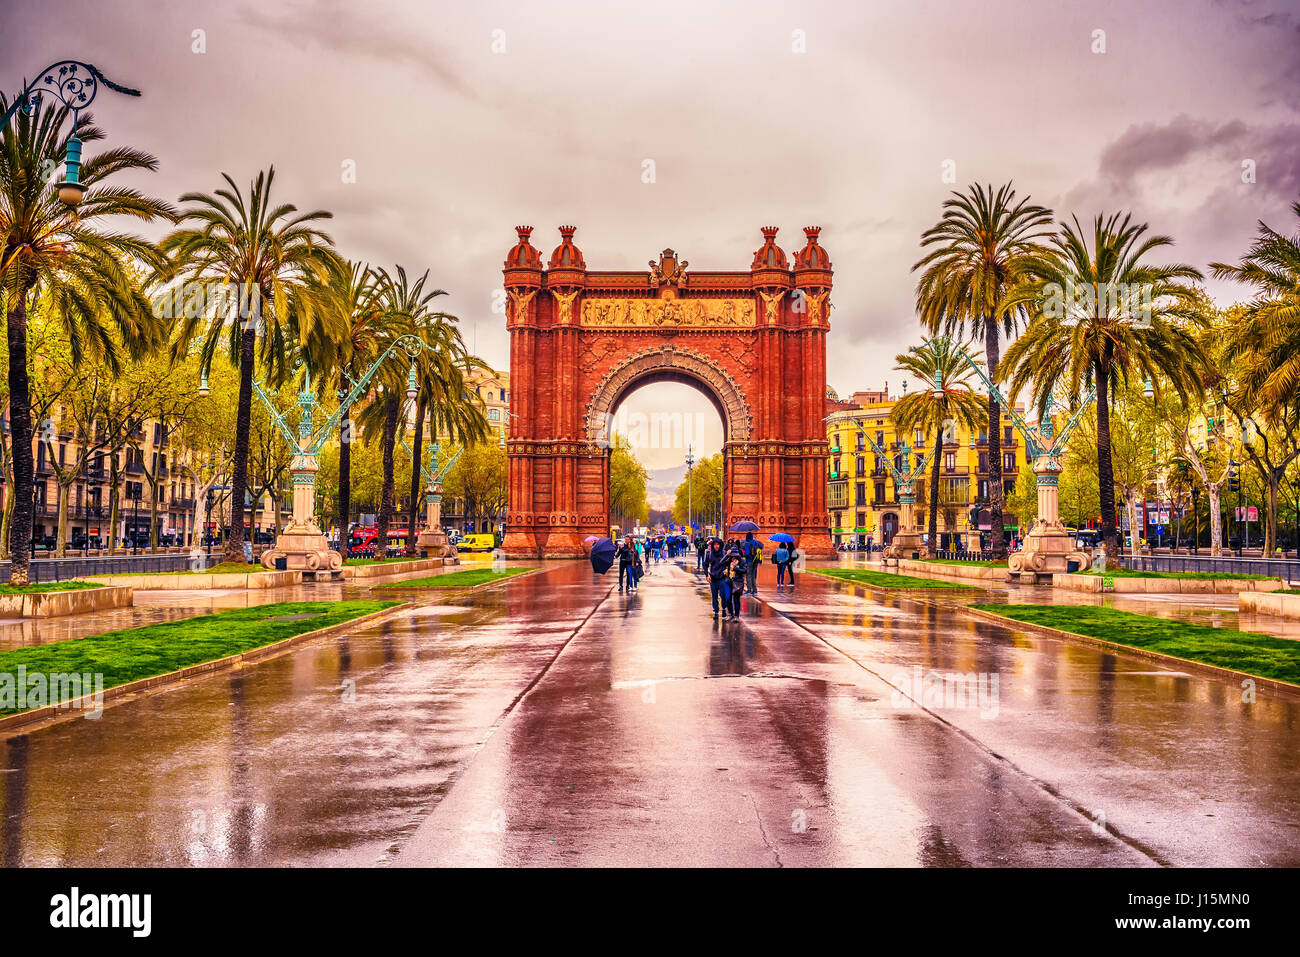 L'Arc de Triomf, Arco de Triunfo in spagnolo, un arco trionfale nella città di Barcellona, in Catalogna, Spagna Foto Stock